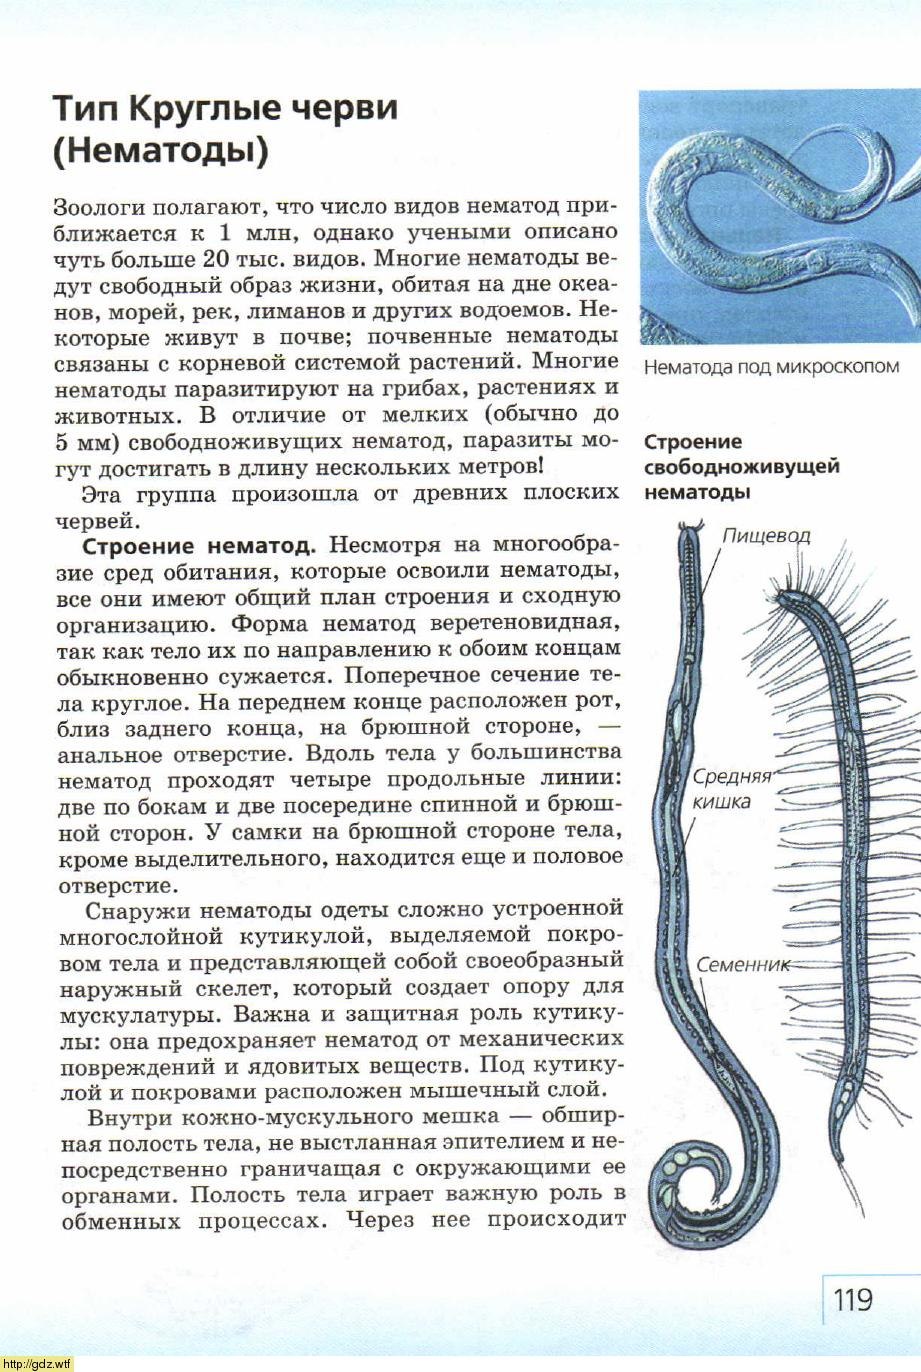 Тип круглых червей биология. Тип круглые черви нематоды 7 класс. Круглые черви строение 7 класс биология. Тип круглые черви класс нематоды 7 класс. Круглые черви нематоды половая система.